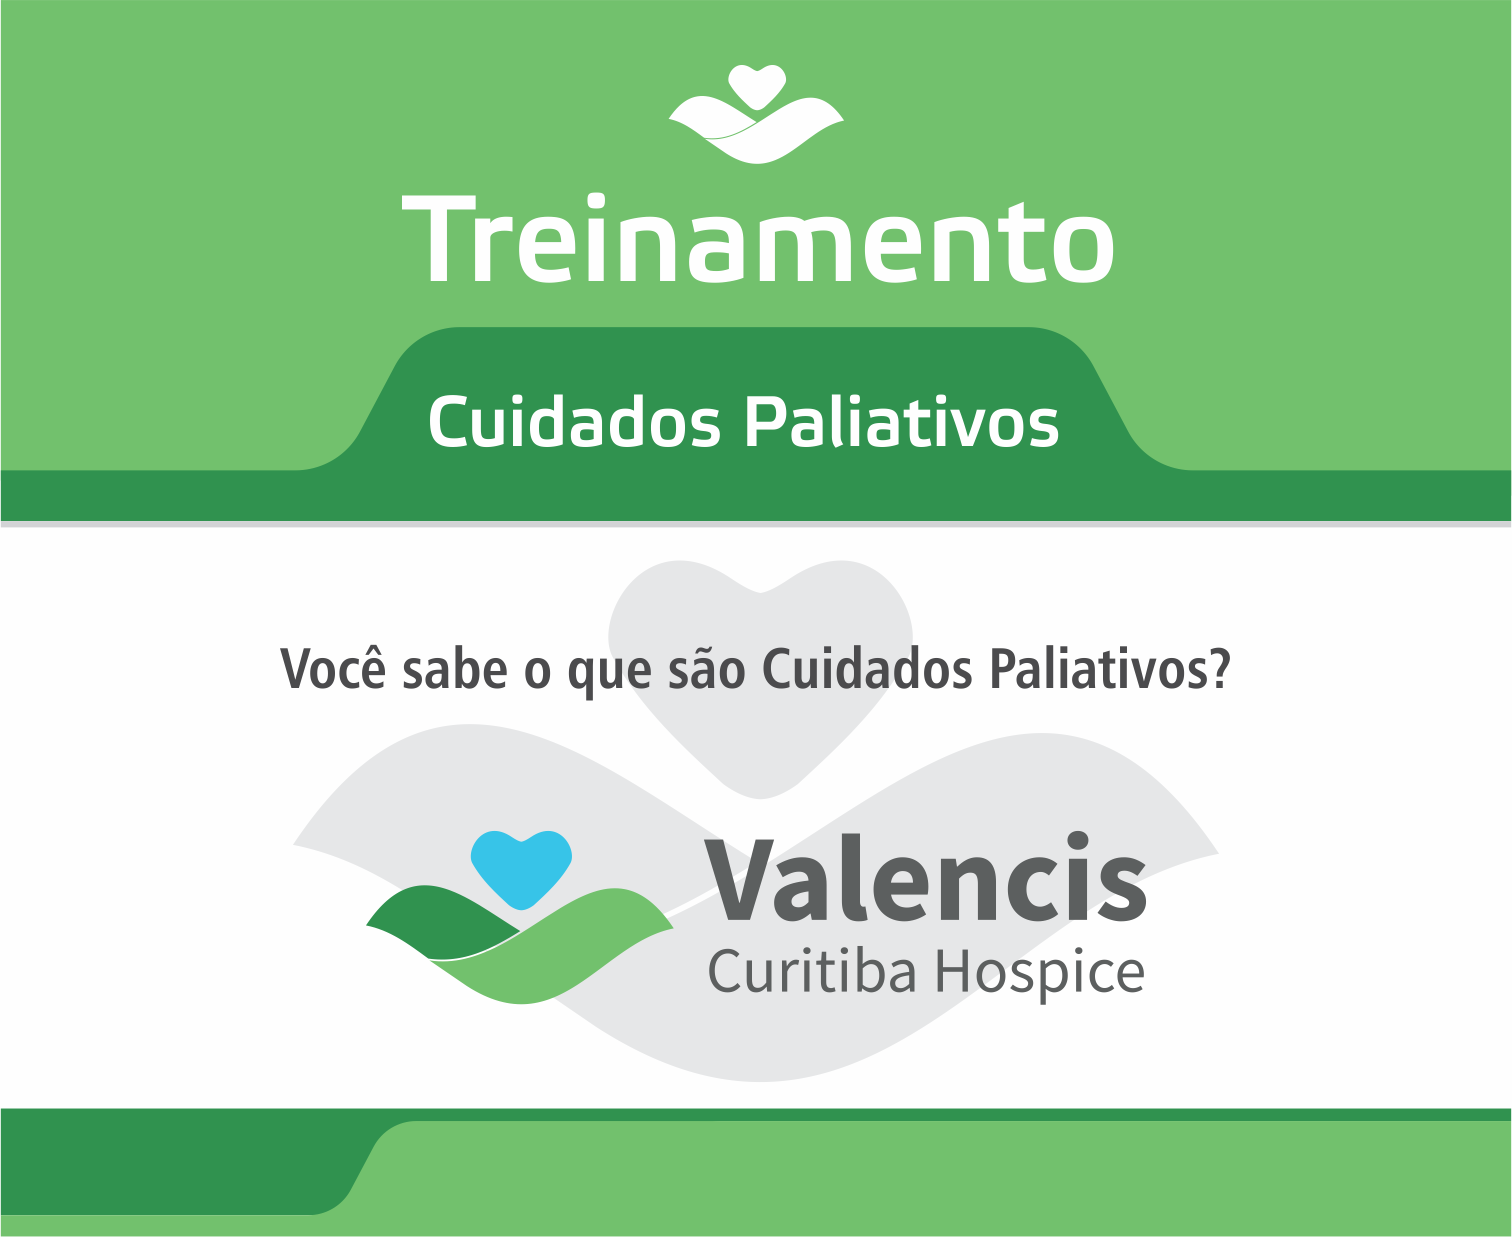 Valencis Curitiba Hospice realiza treinamento sobre cuidados paliativos